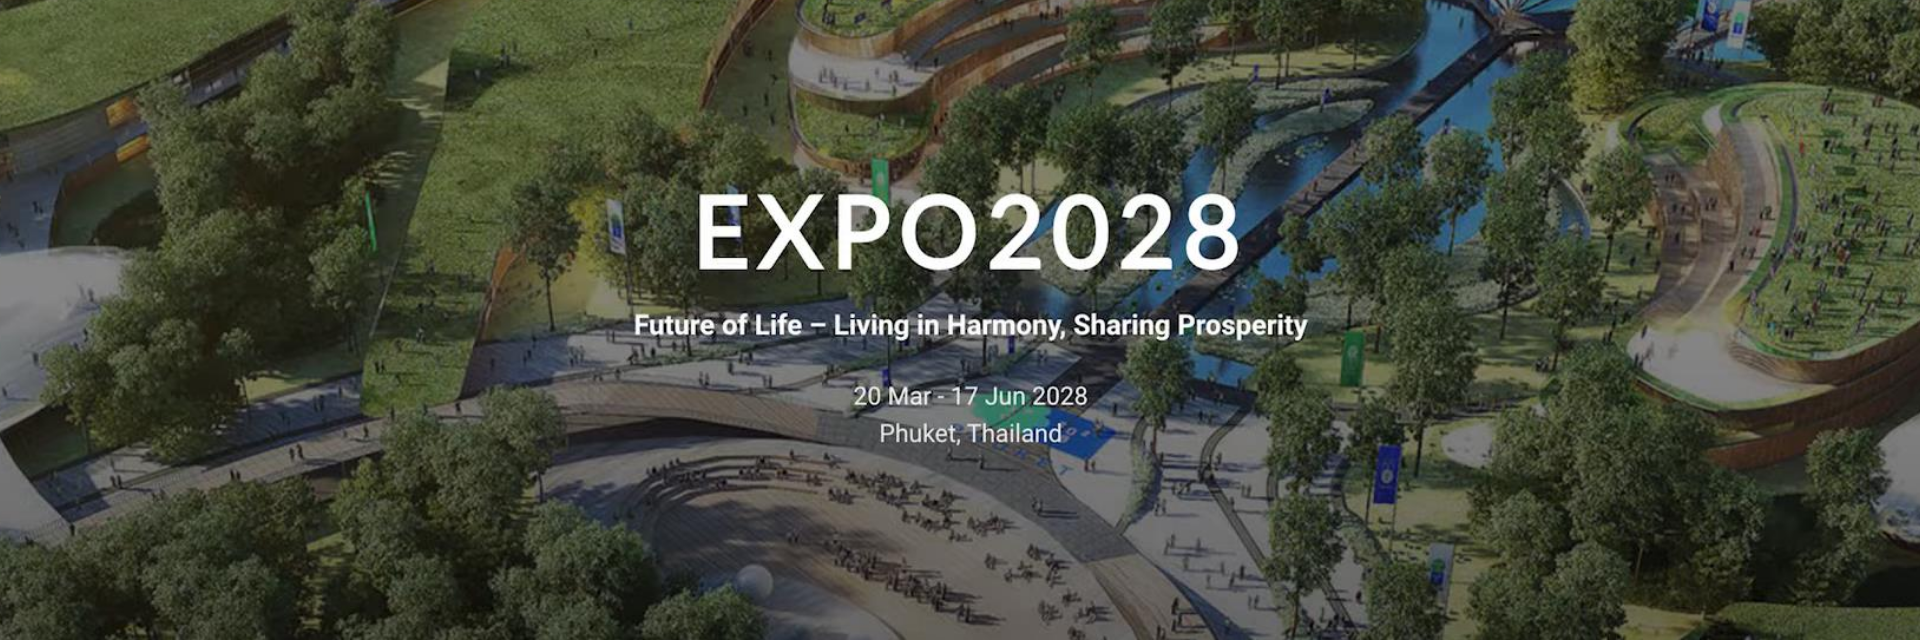 The road to Expo 2028 Phuket Thailand